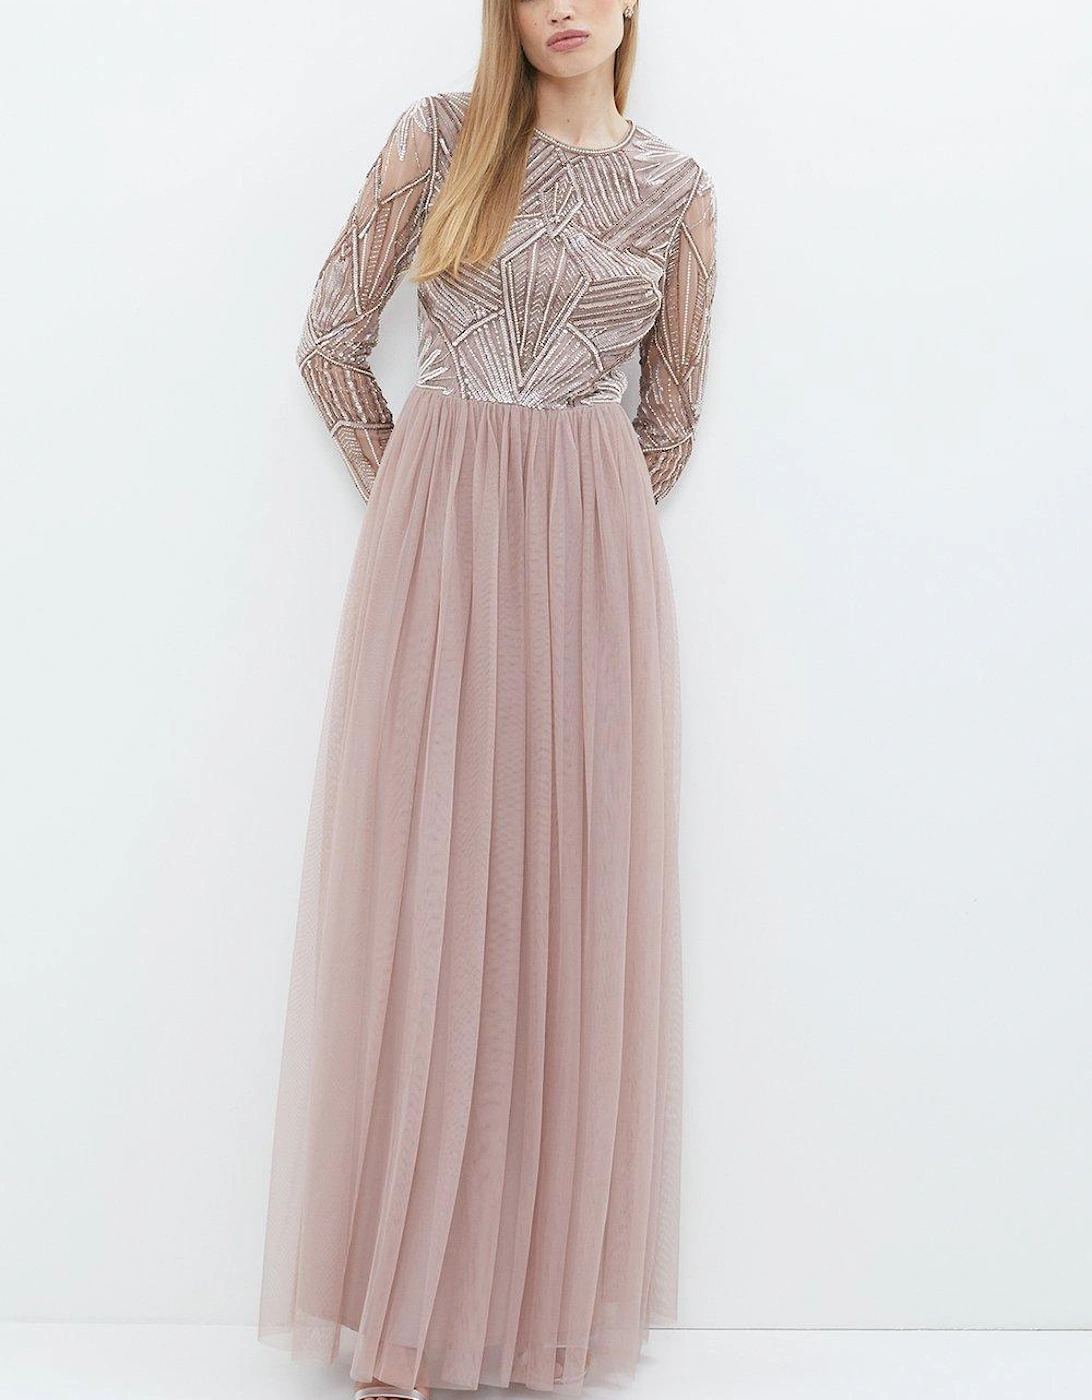 Embellished Bodice Long Sleeve Maxi Dress, 5 of 4